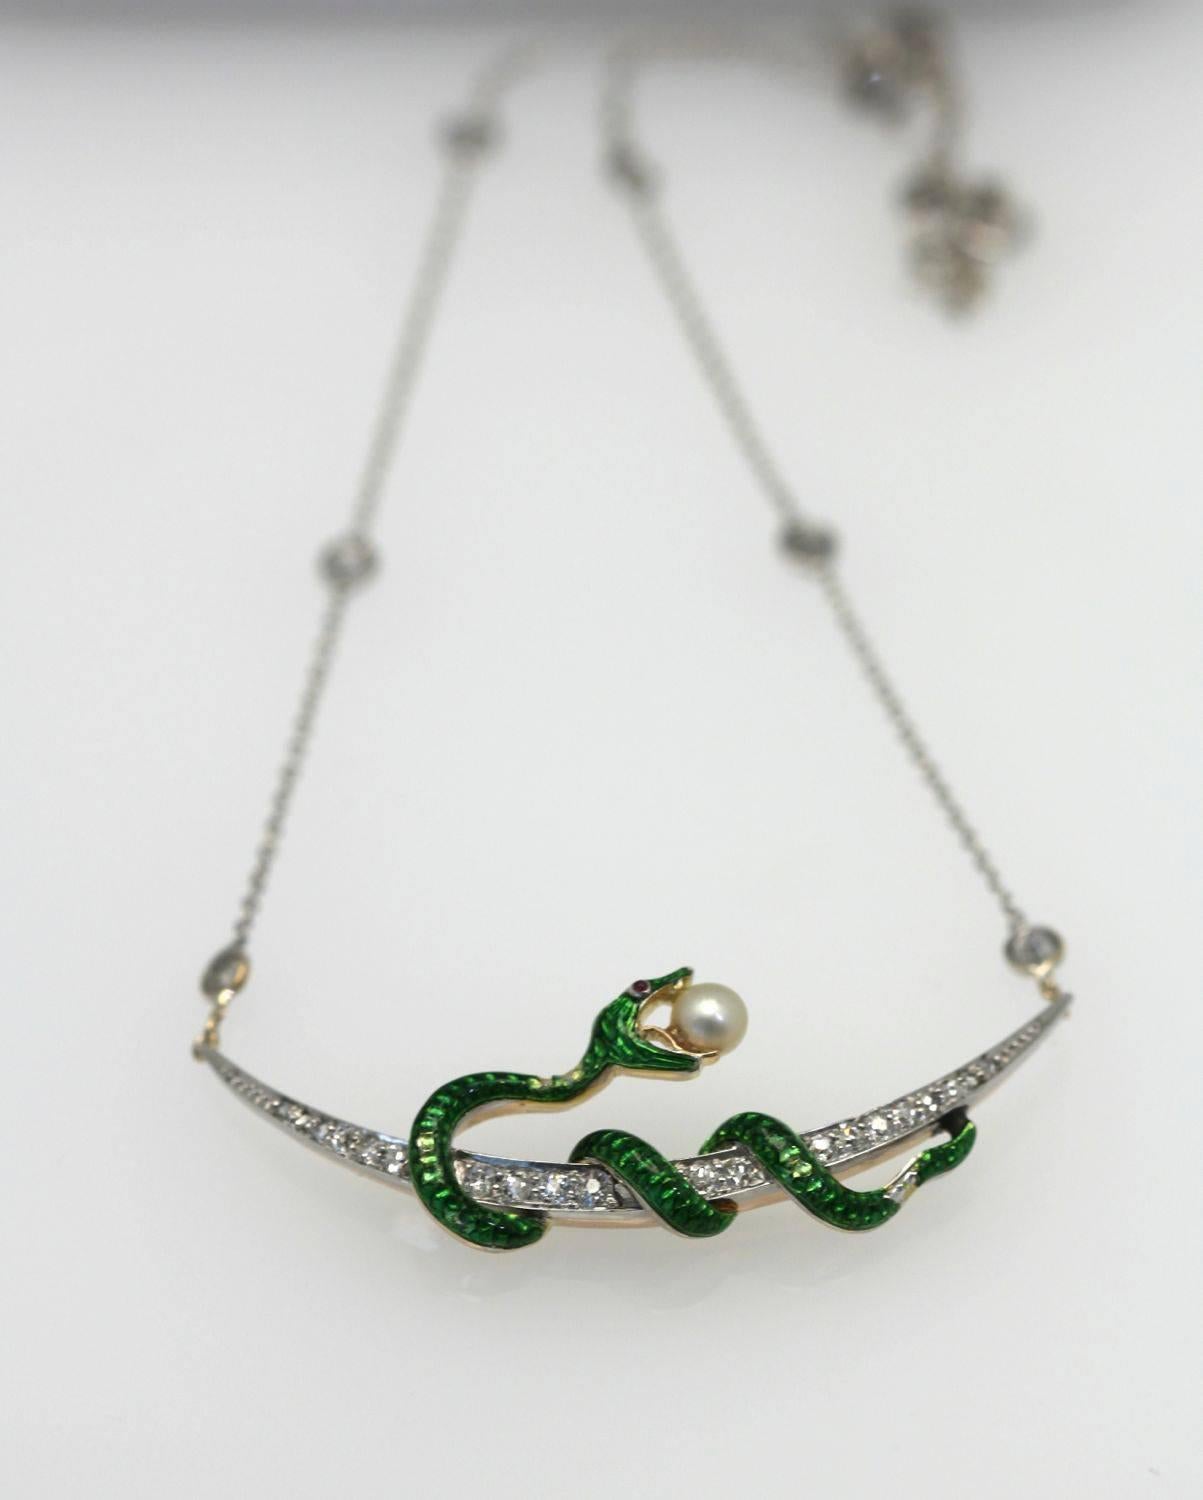 Collier à croissant de diamants avec serpent tenant une perle sur une chaîne sertie de diamants.  L'émail vert est légèrement abîmé, mais cela n'altère en rien la beauté de cette pièce.  Au départ, il s'agissait d'une broche, mais comme elle était